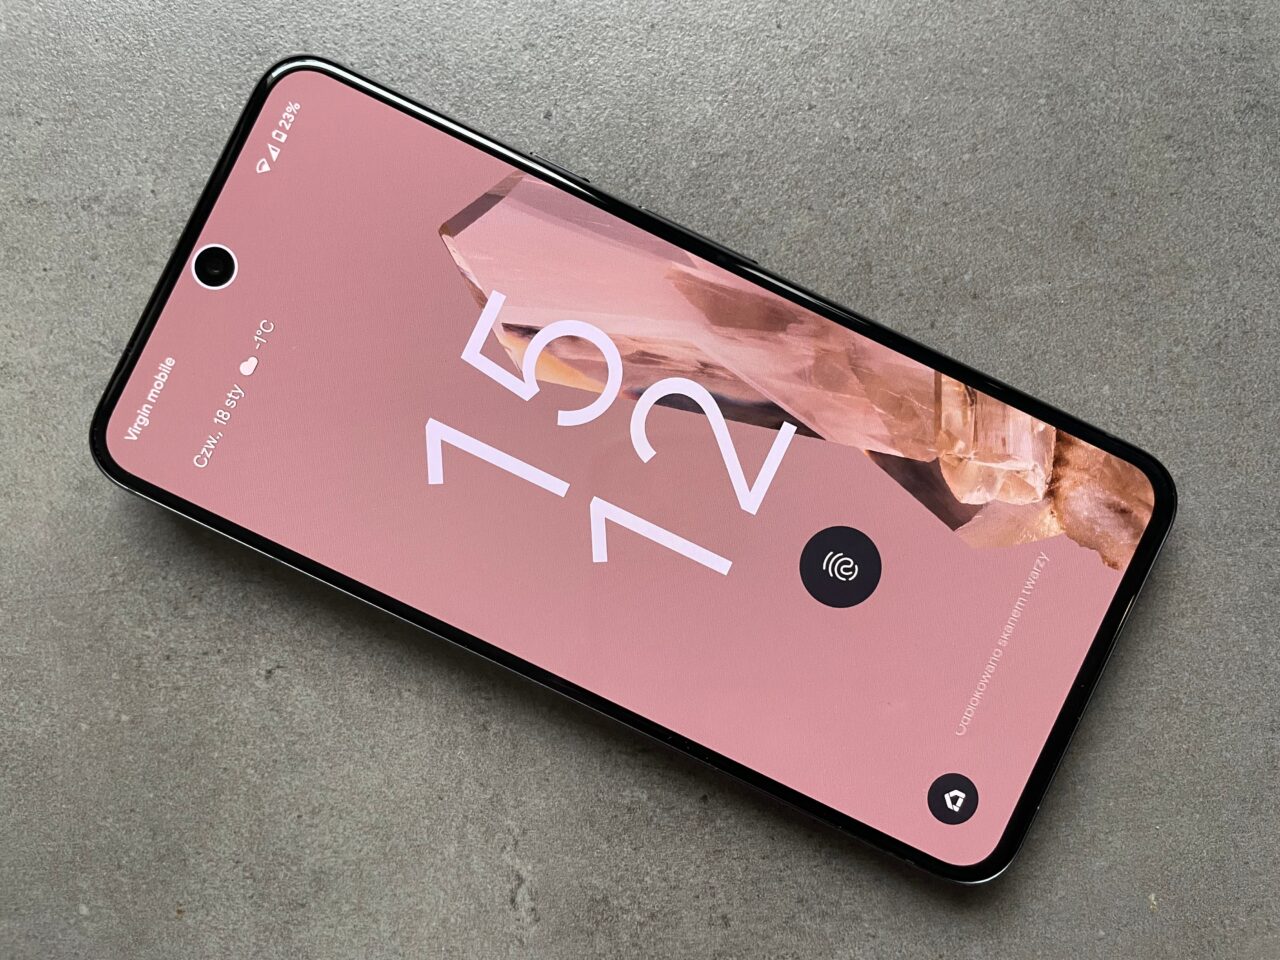 Smartfon w kolorze różowym leżący na szarym tle, z widocznym ekranem blokady i dużymi cyframi 12:45 na tle różowych kryształów.